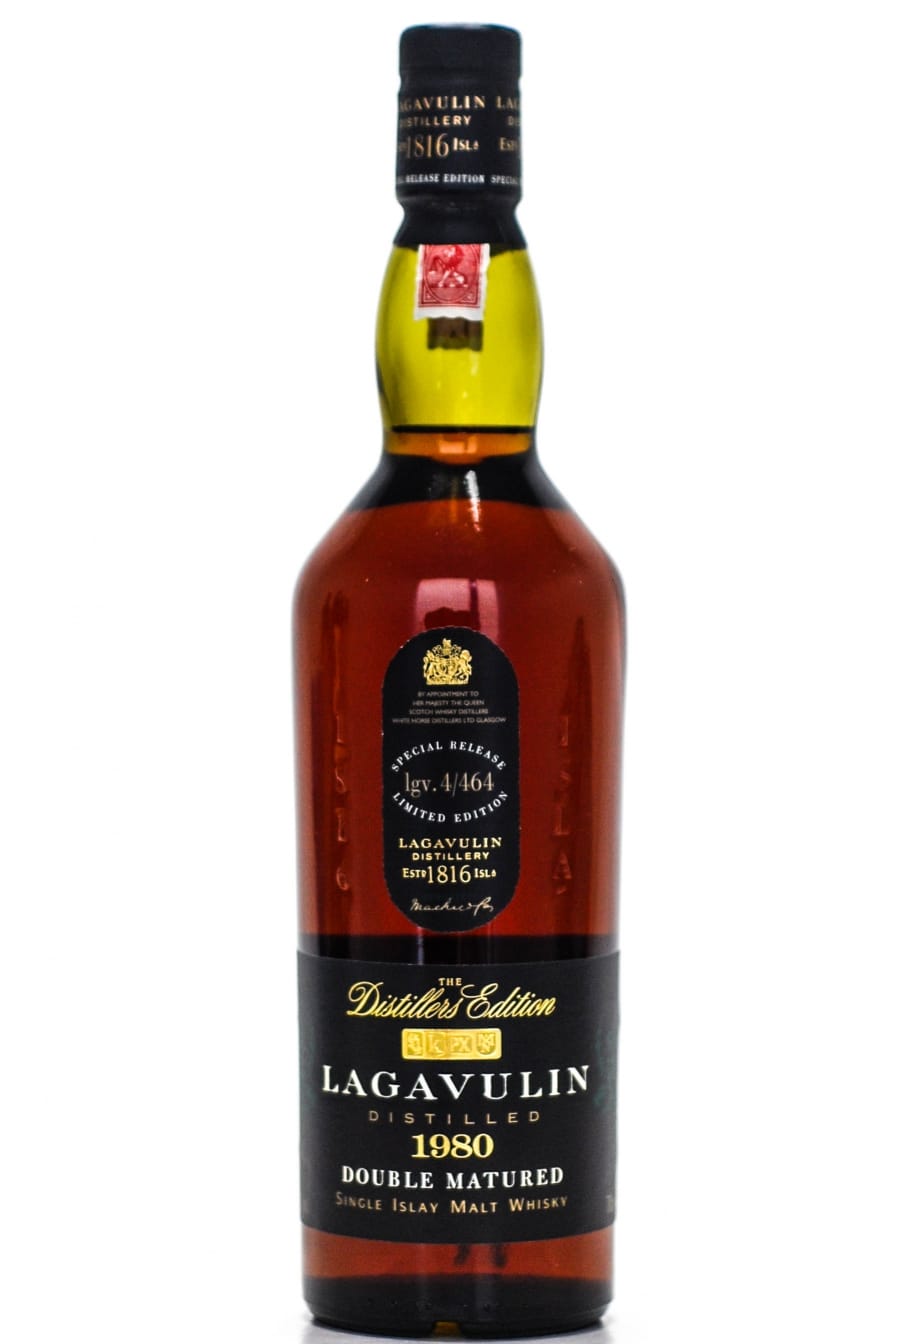 Lagavulin - 1980 Distillers Edition lgv.4/464 43% 1980